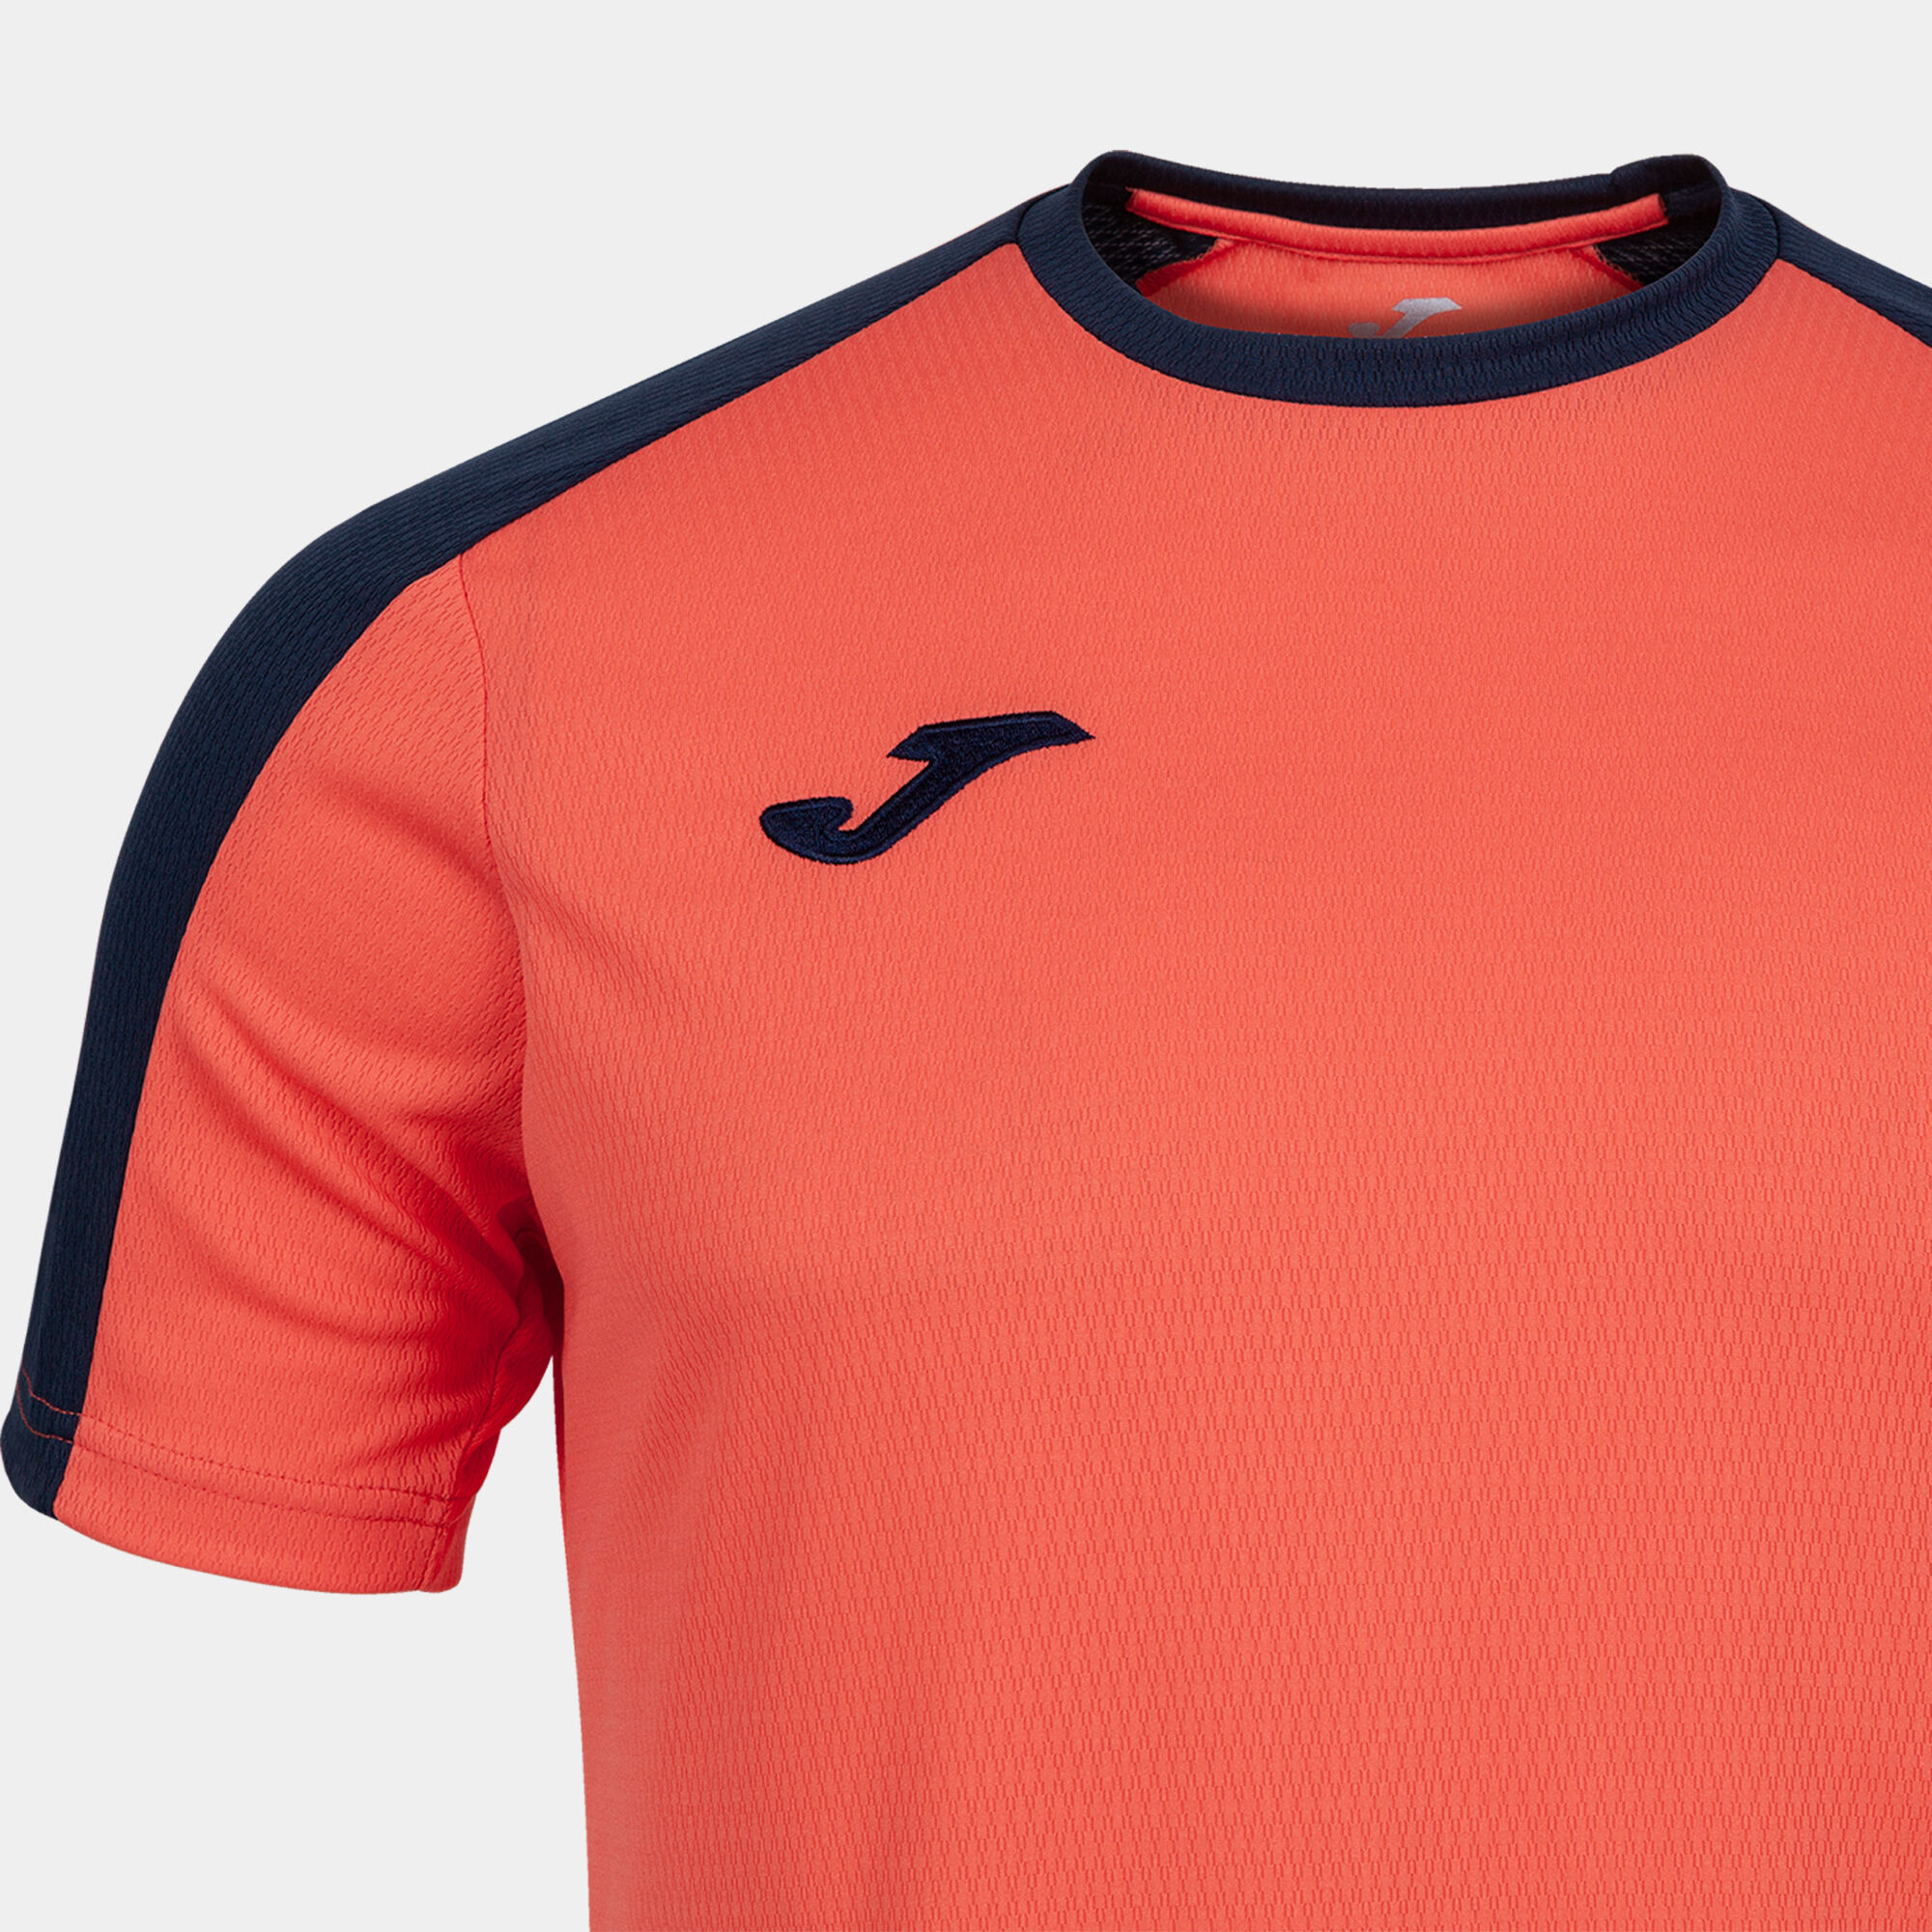 Camiseta manga corta hombre Eco Championship naranja flúor marino